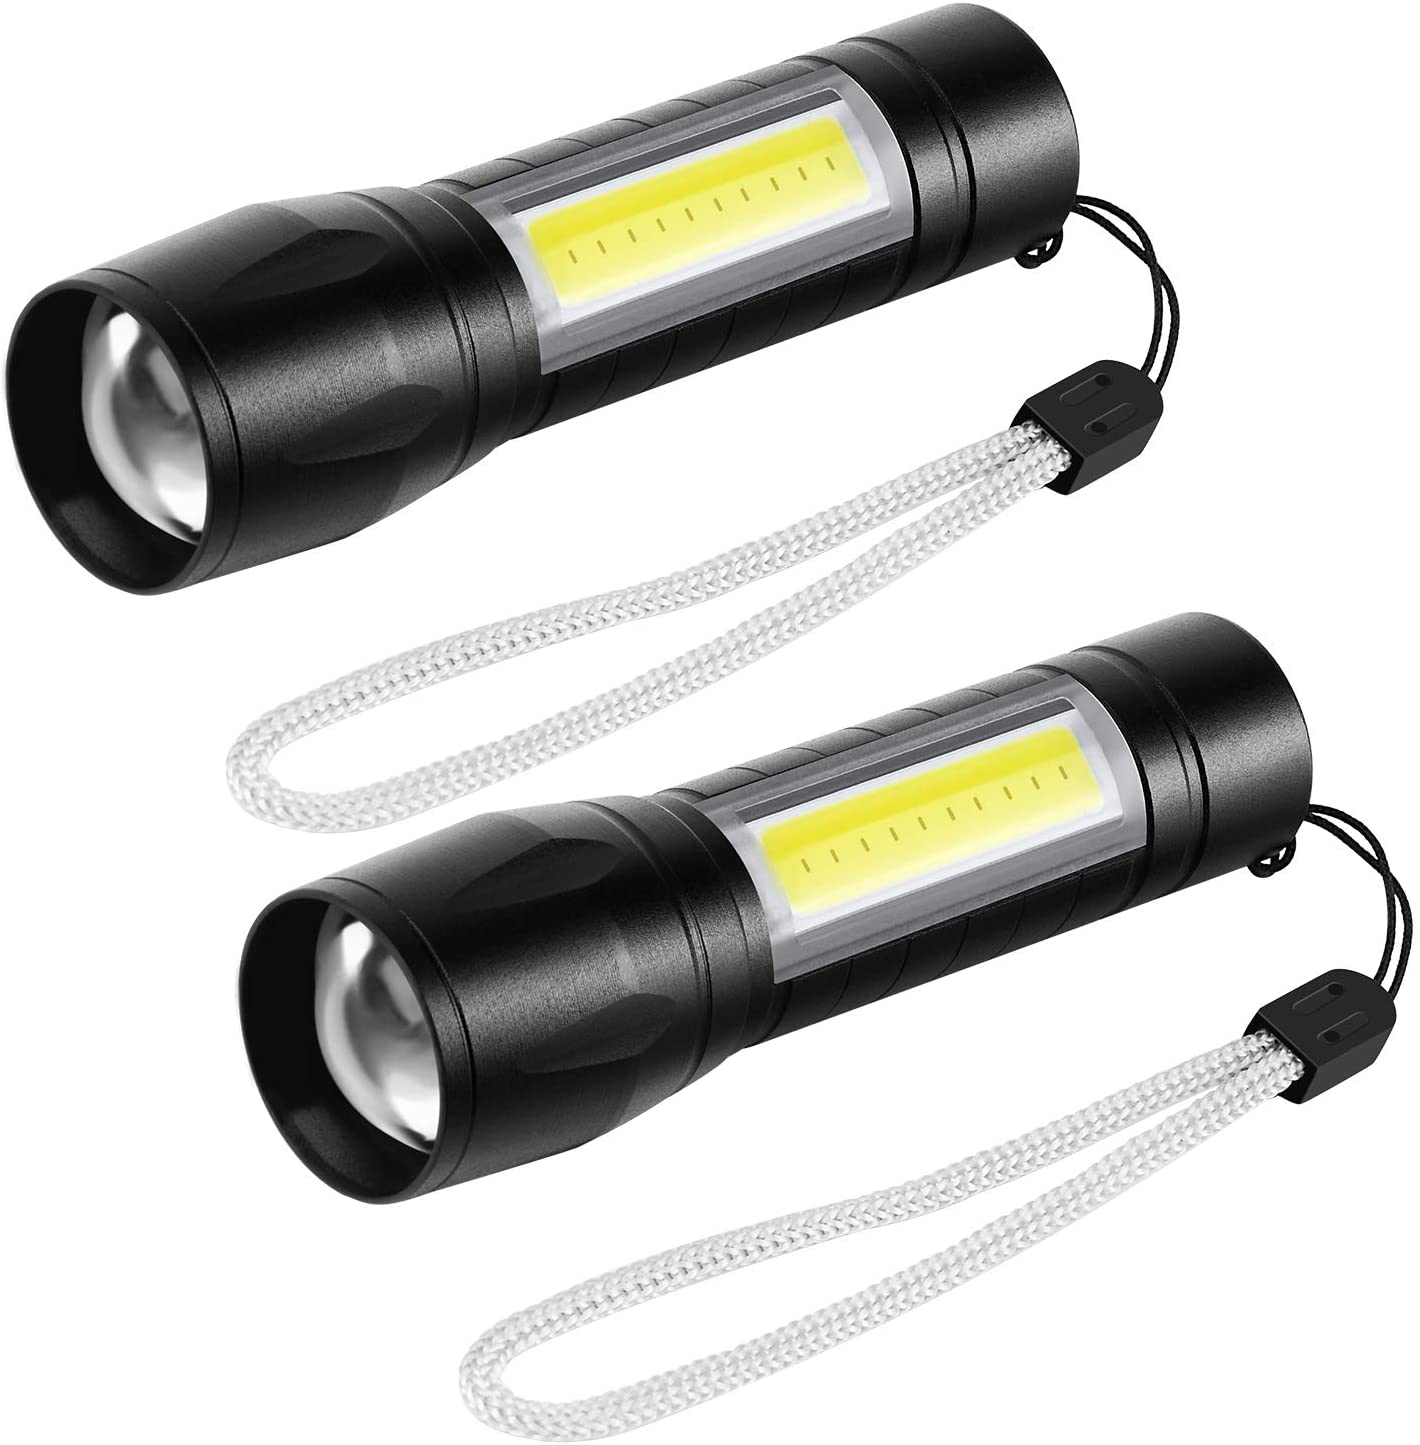 Linterna LED recargable Super brillante táctica flash luz con lámpara mazorca y puerto USB Mini linternas portátiles de mano con zoom, resistente al agua, 3 modos (paquete de 2)